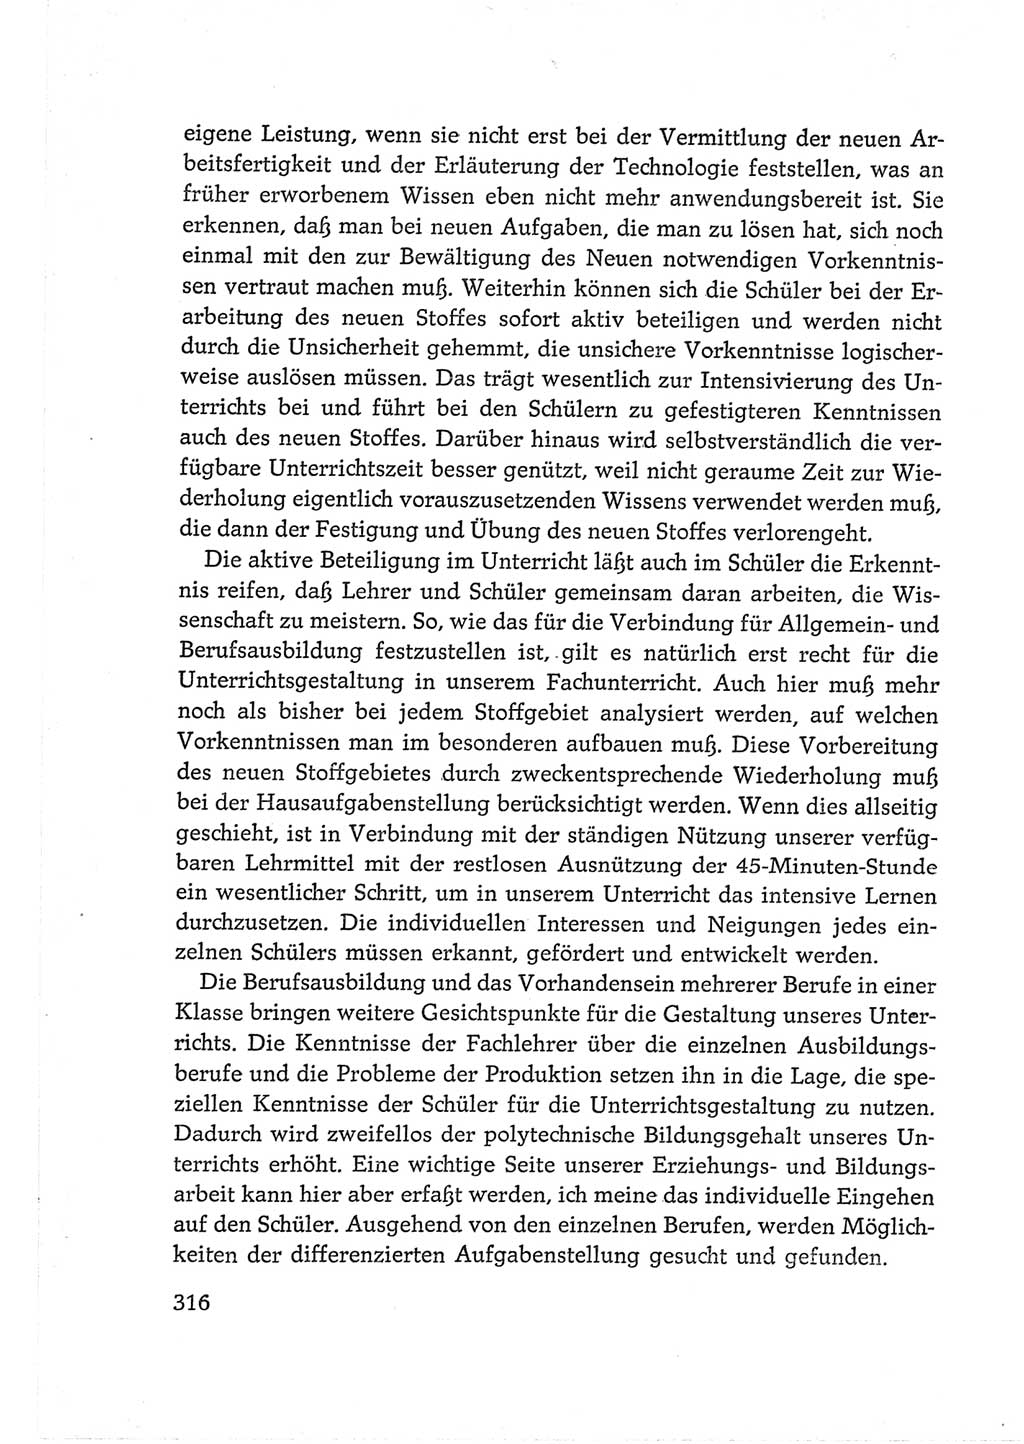 Protokoll der Verhandlungen des Ⅵ. Parteitages der Sozialistischen Einheitspartei Deutschlands (SED) [Deutsche Demokratische Republik (DDR)] 1963, Band Ⅲ, Seite 316 (Prot. Verh. Ⅵ. PT SED DDR 1963, Bd. Ⅲ, S. 316)